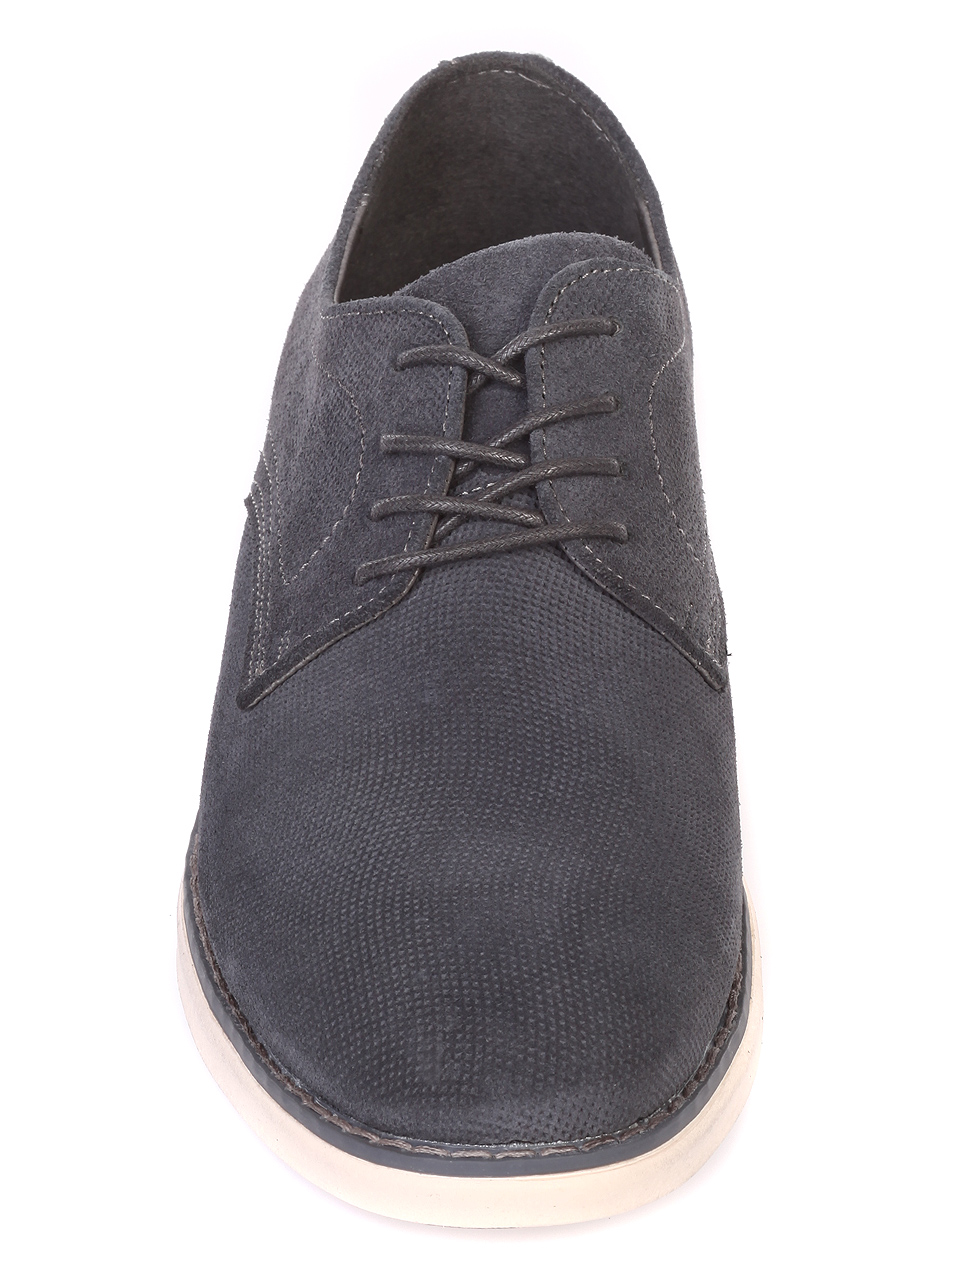 Ежедневни мъжки обувки от естествен велур 7N-19209 grey